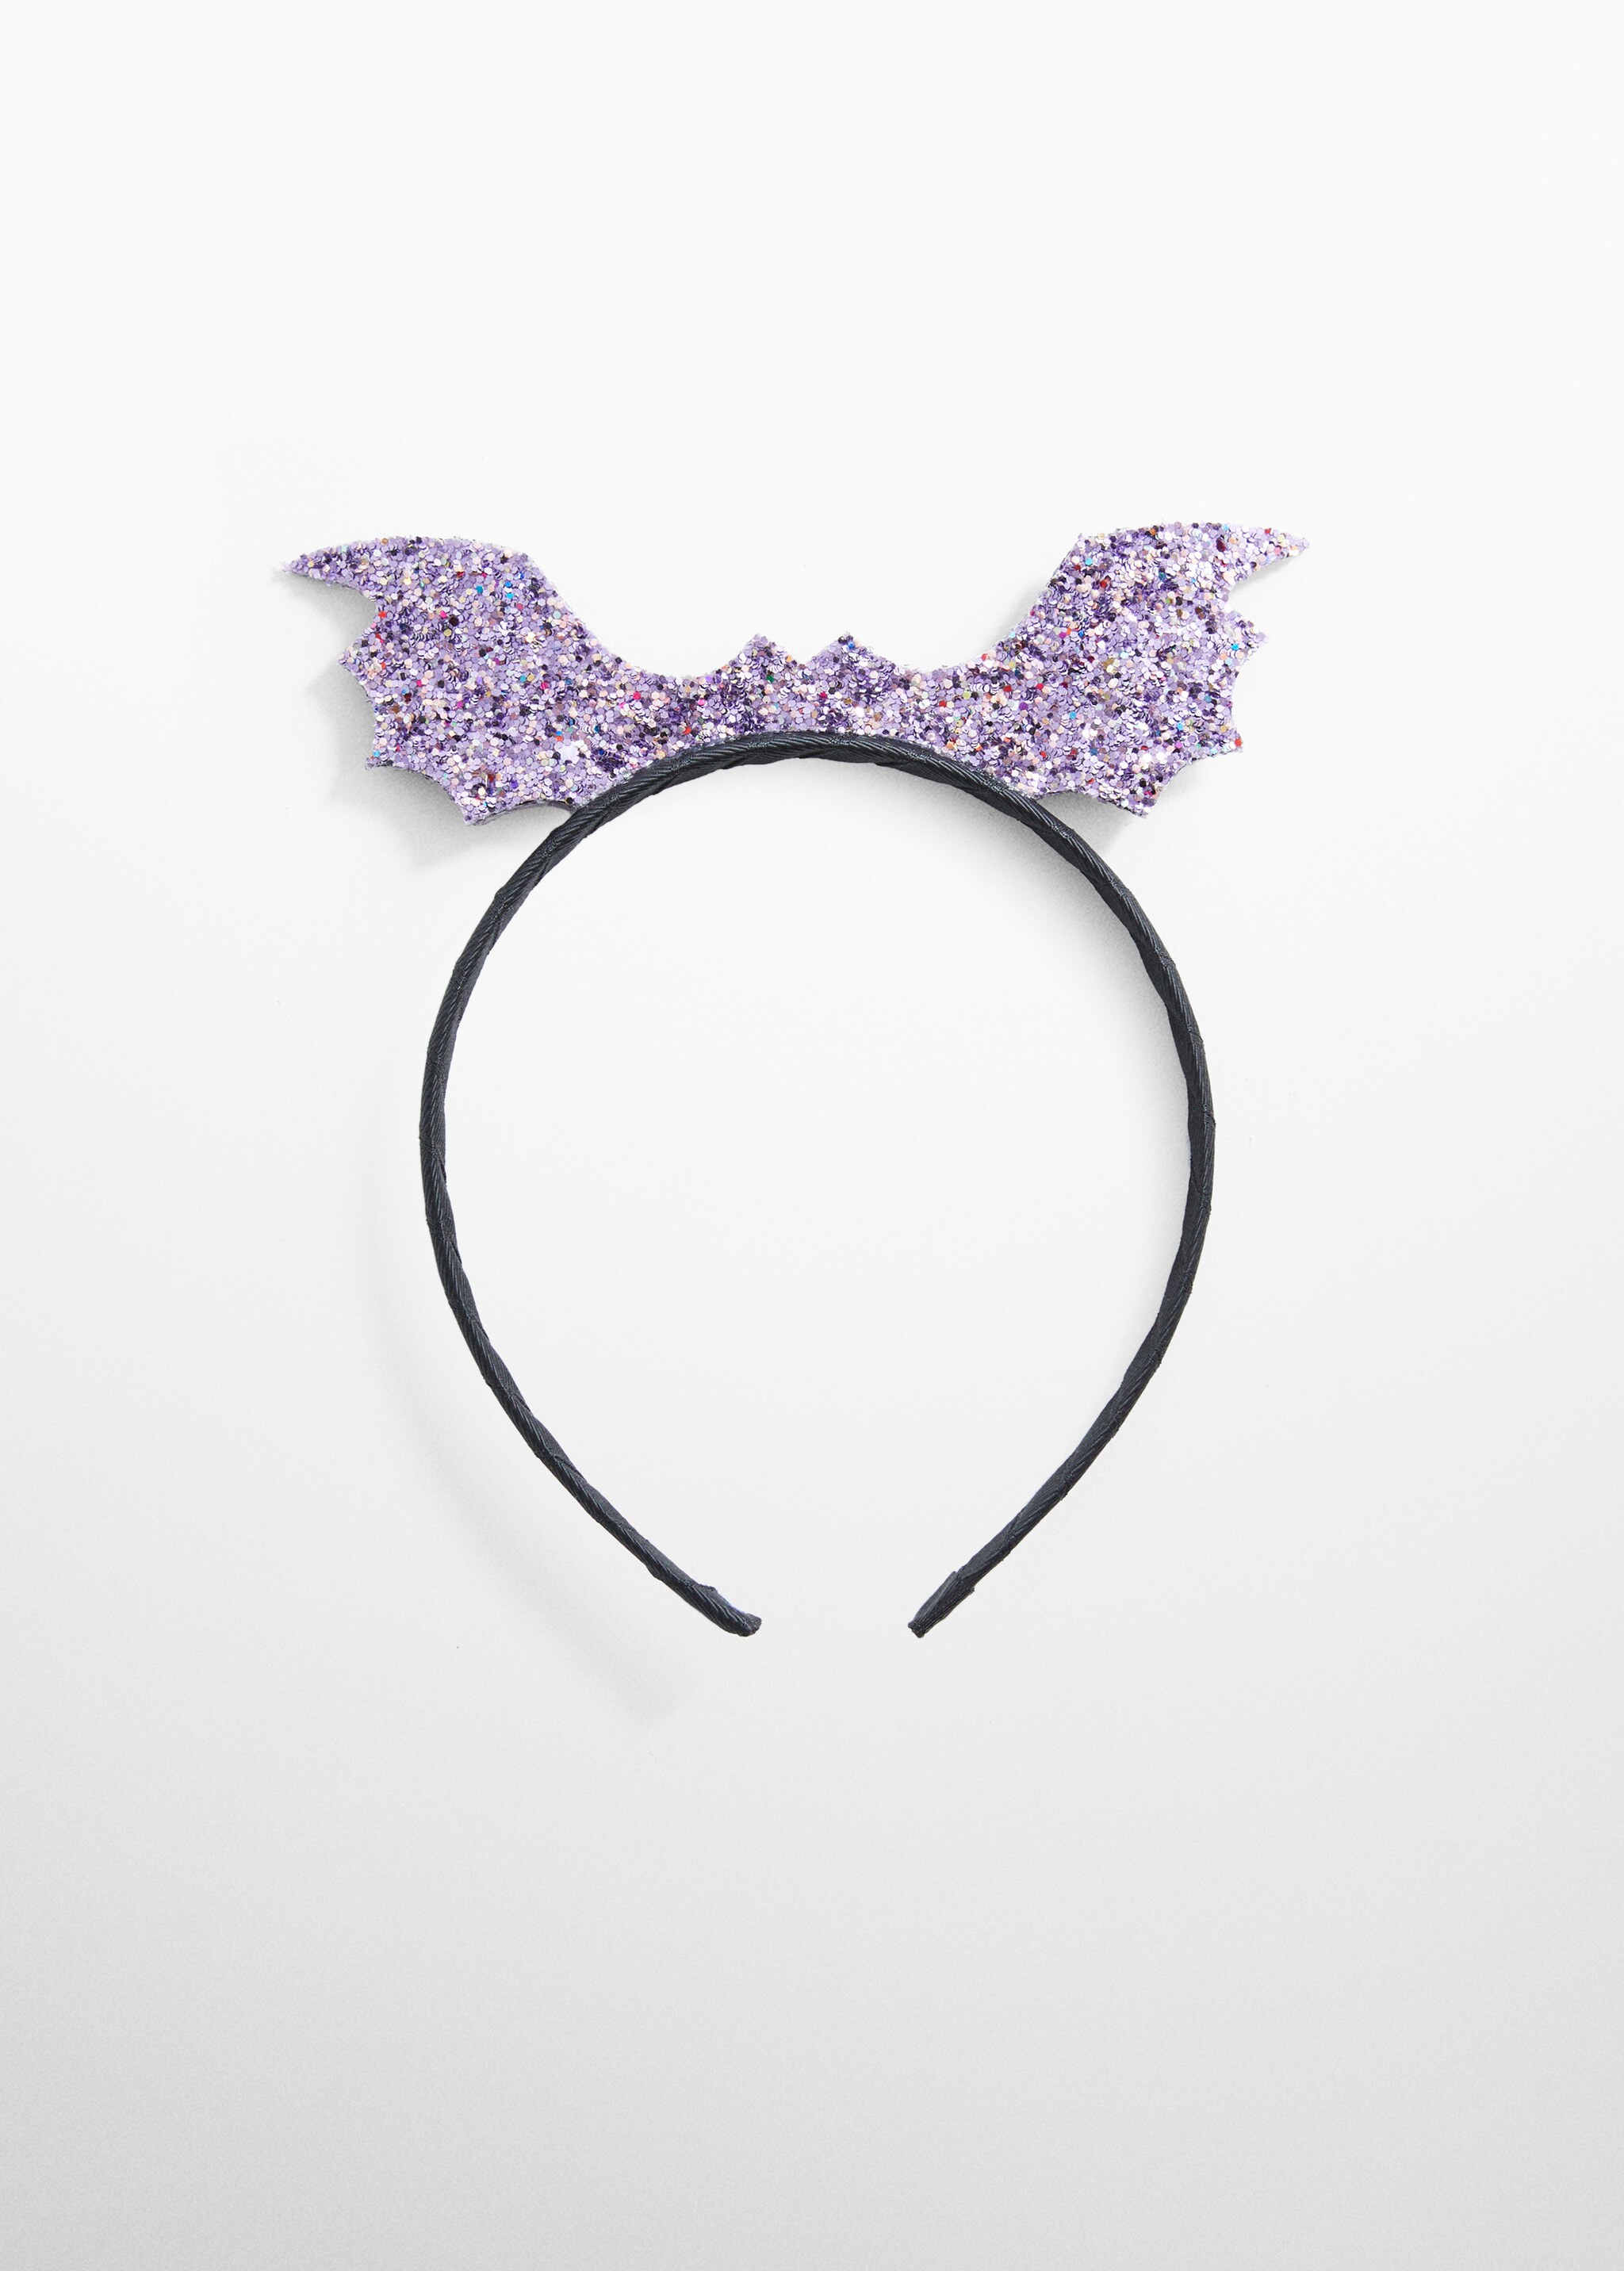 Glitter bat headband - Article without model